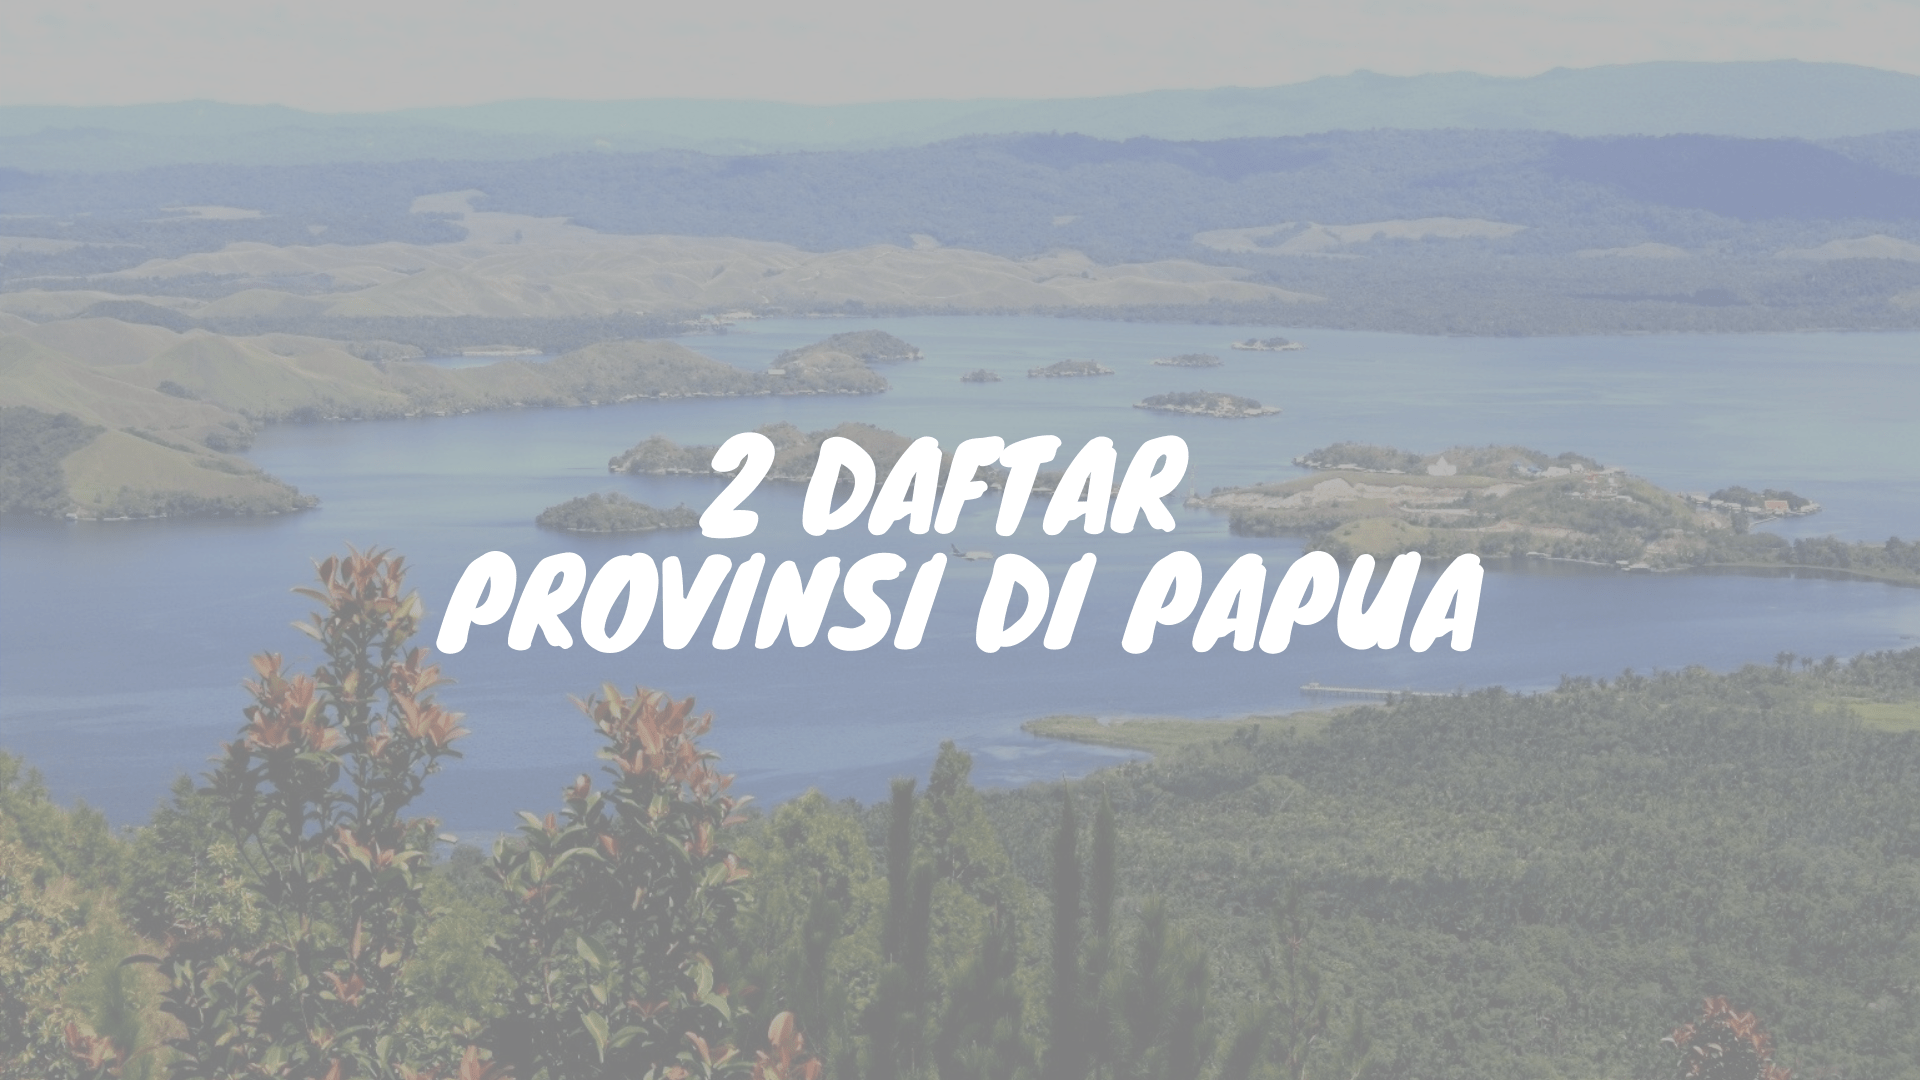 Daftar provinsi di pulau Papua